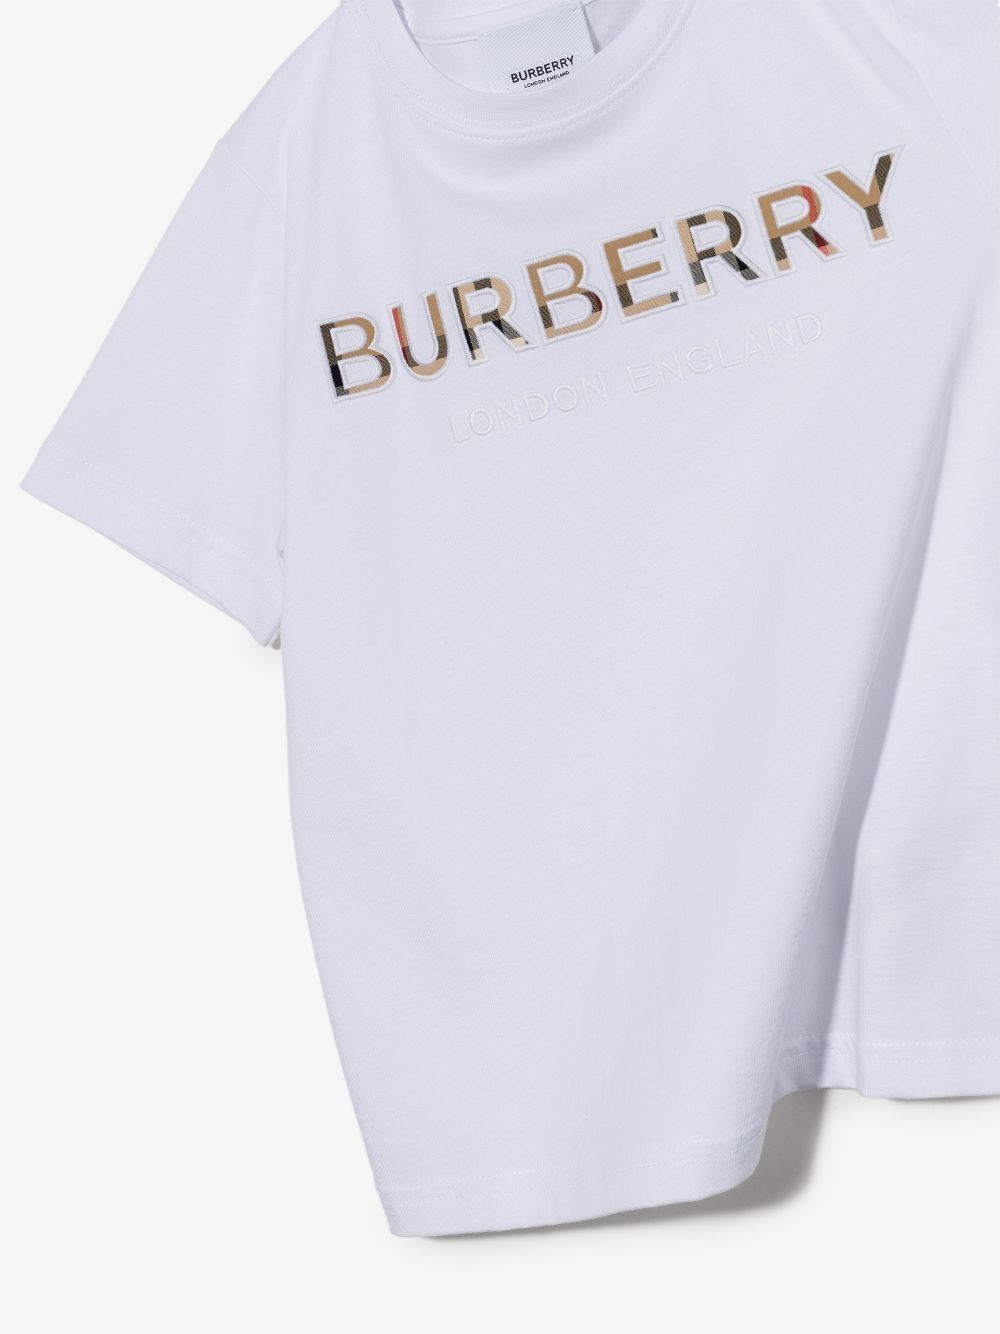 T-shirt in cotone bianco/beige archivio con logo ricamato